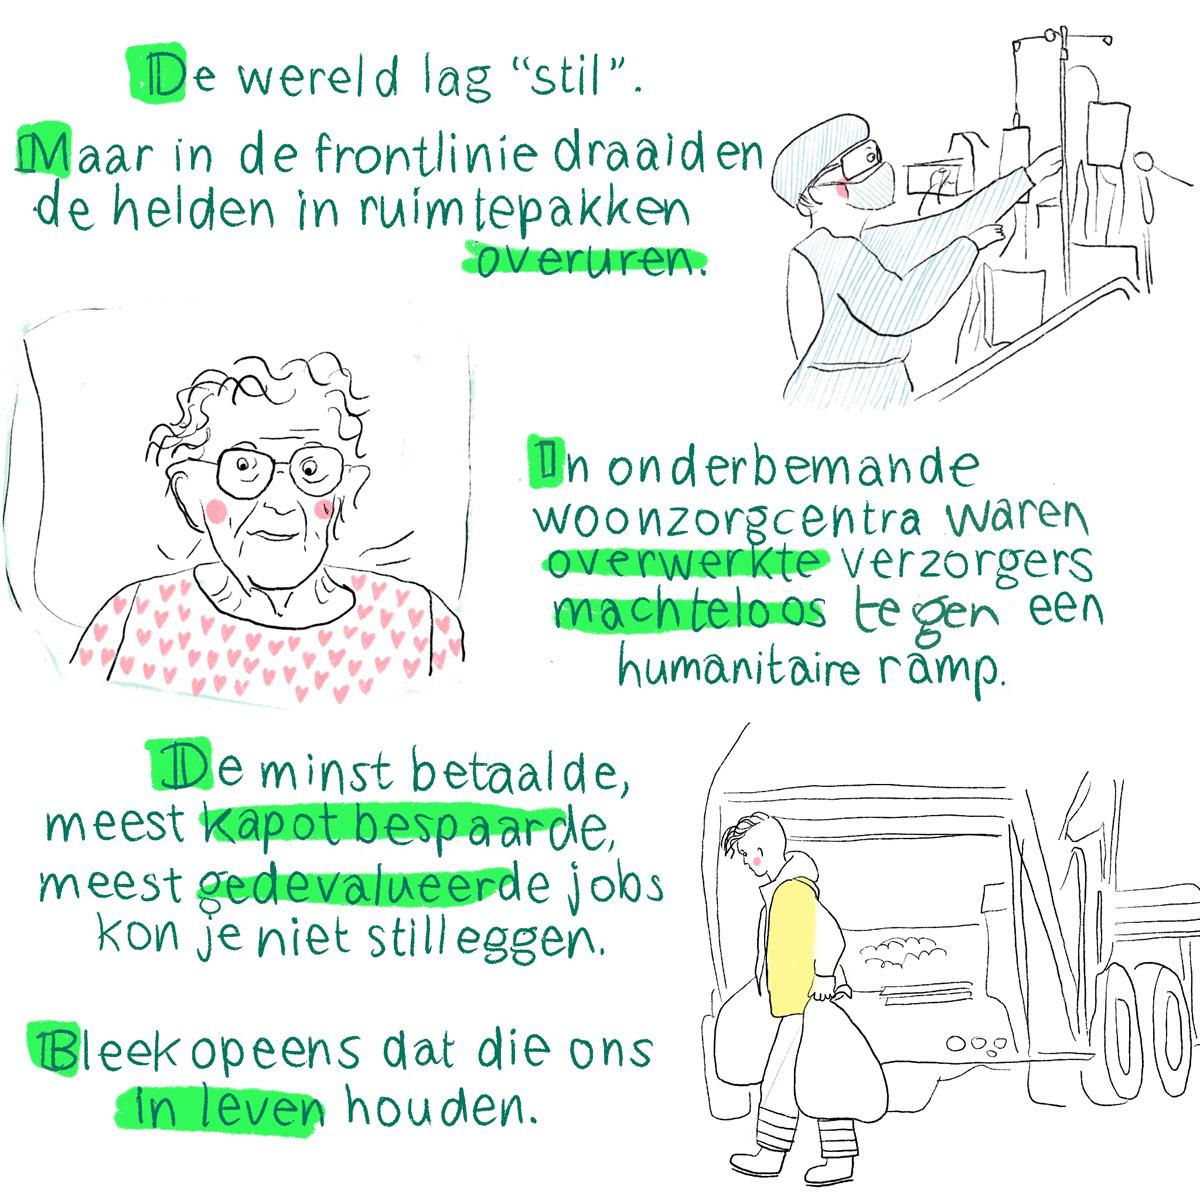 Illustrator Noëmi Willemen: 'Bleek opeens dat de meest kapotbespaarde jobs ons in leven houden'